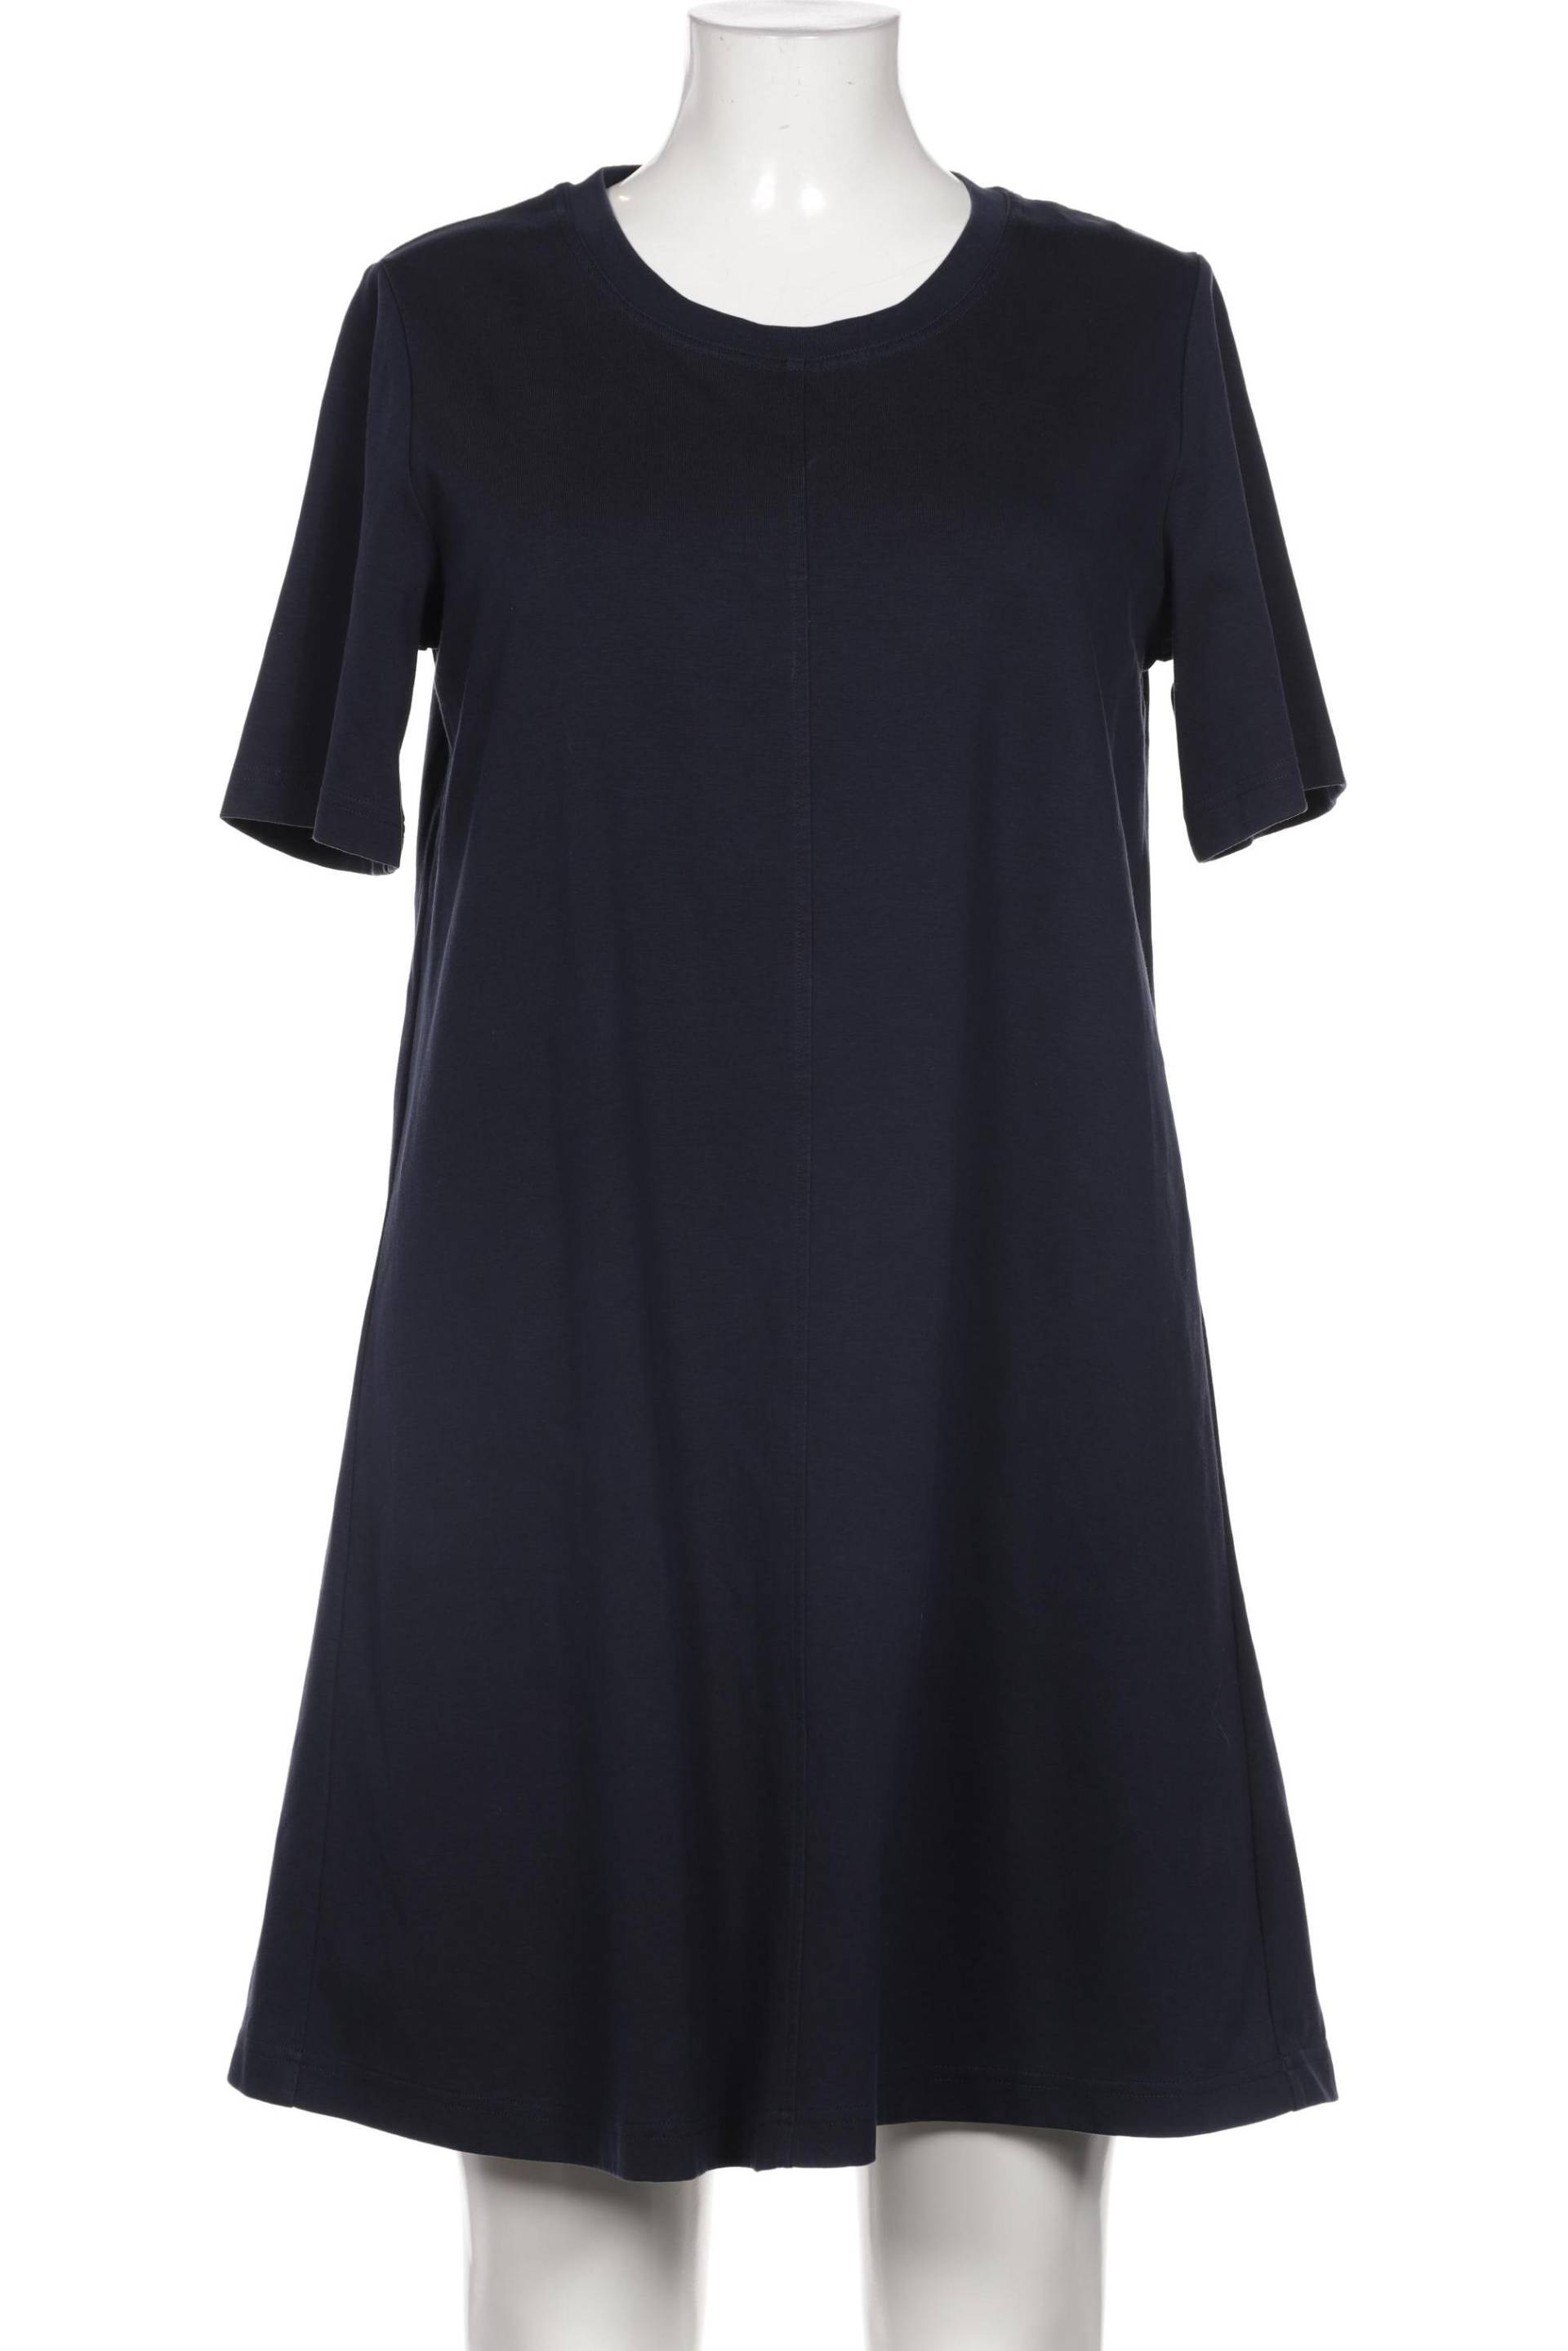 Arket Damen Kleid, marineblau, Gr. 42 von Arket